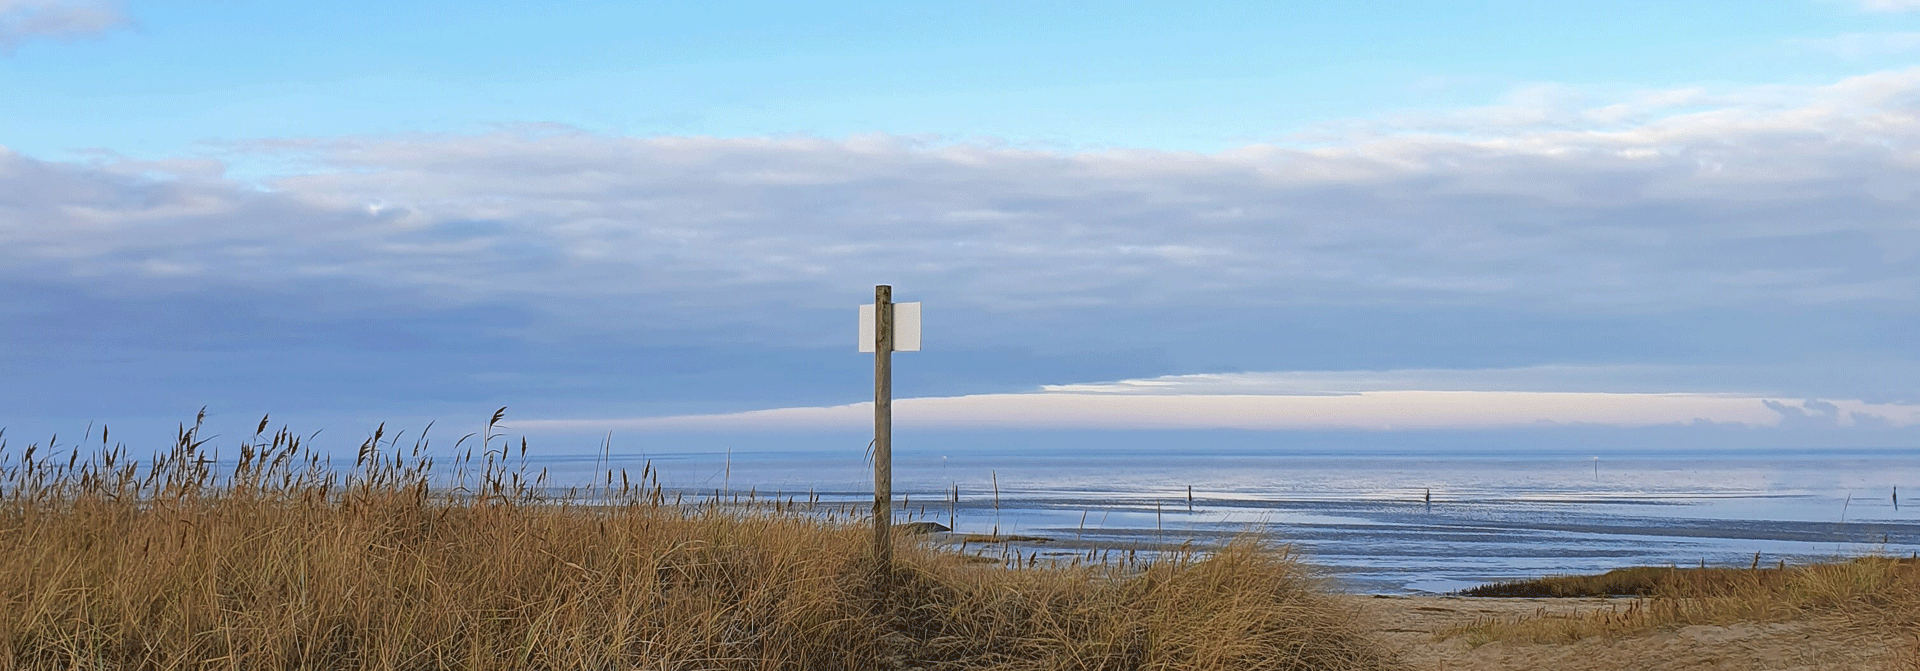 Strand an der Nordsee vor Cuxhaven